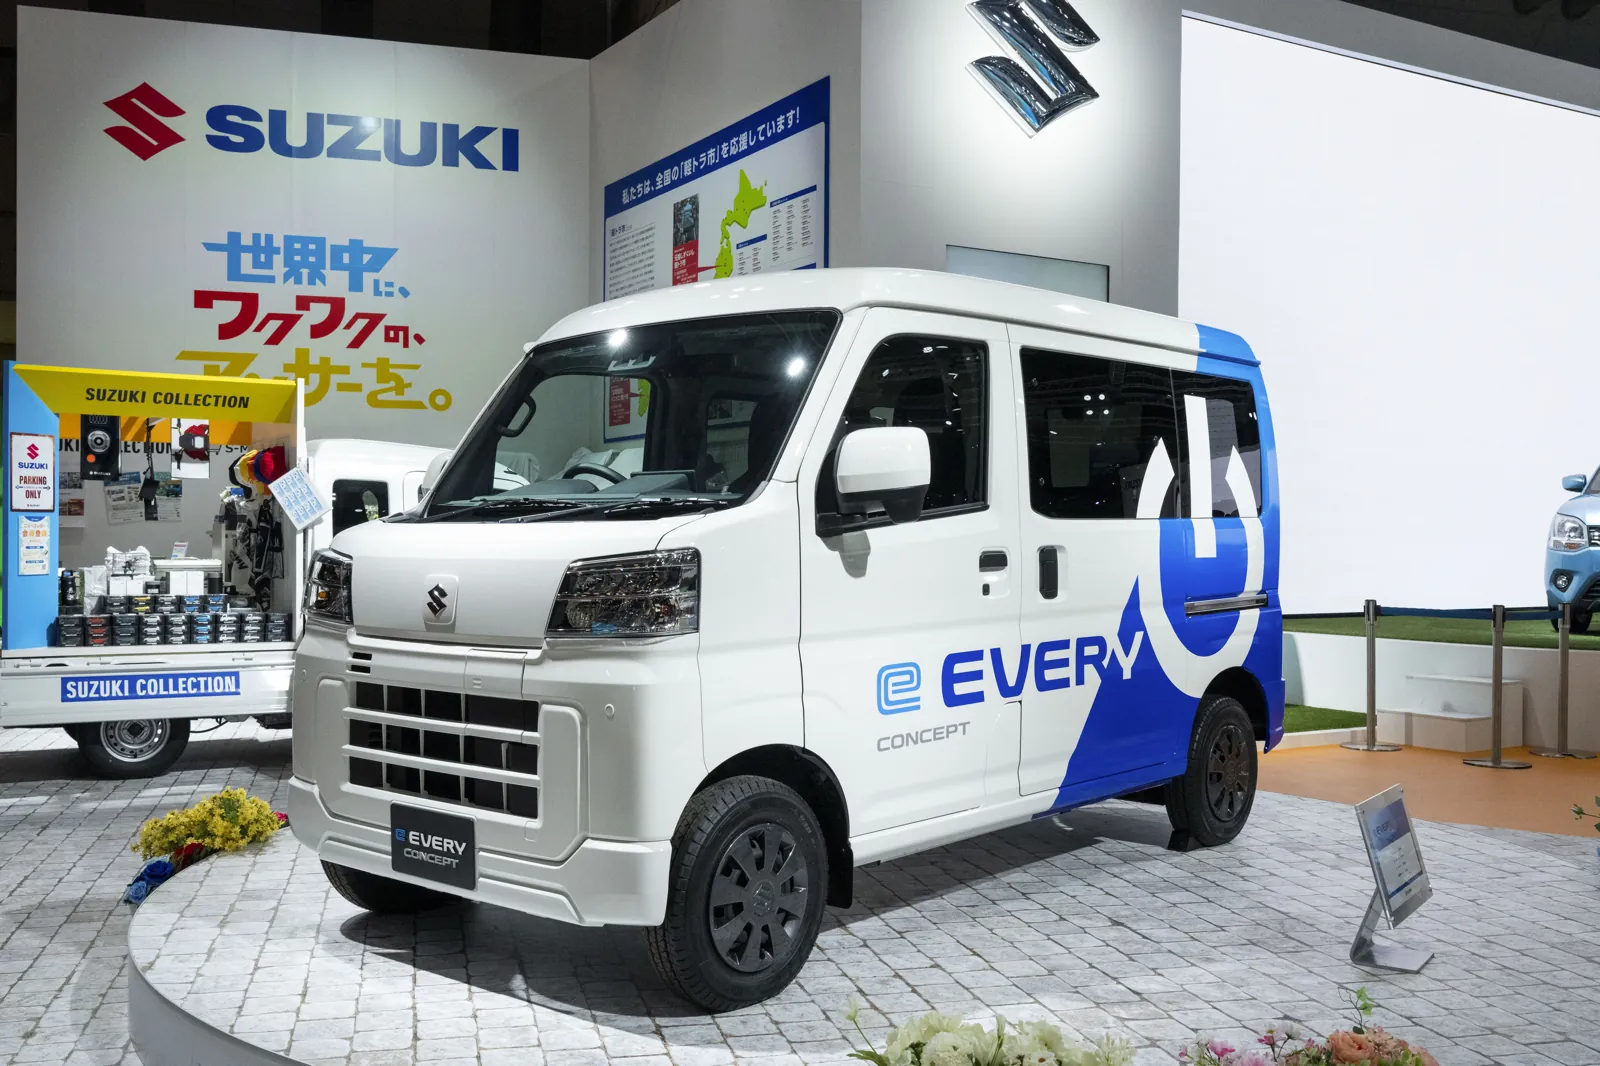 Mondial de l'Auto, Suzuki présente l'e EVERY CONCEPT : une mini-fourgonnette électrique commerciale légère